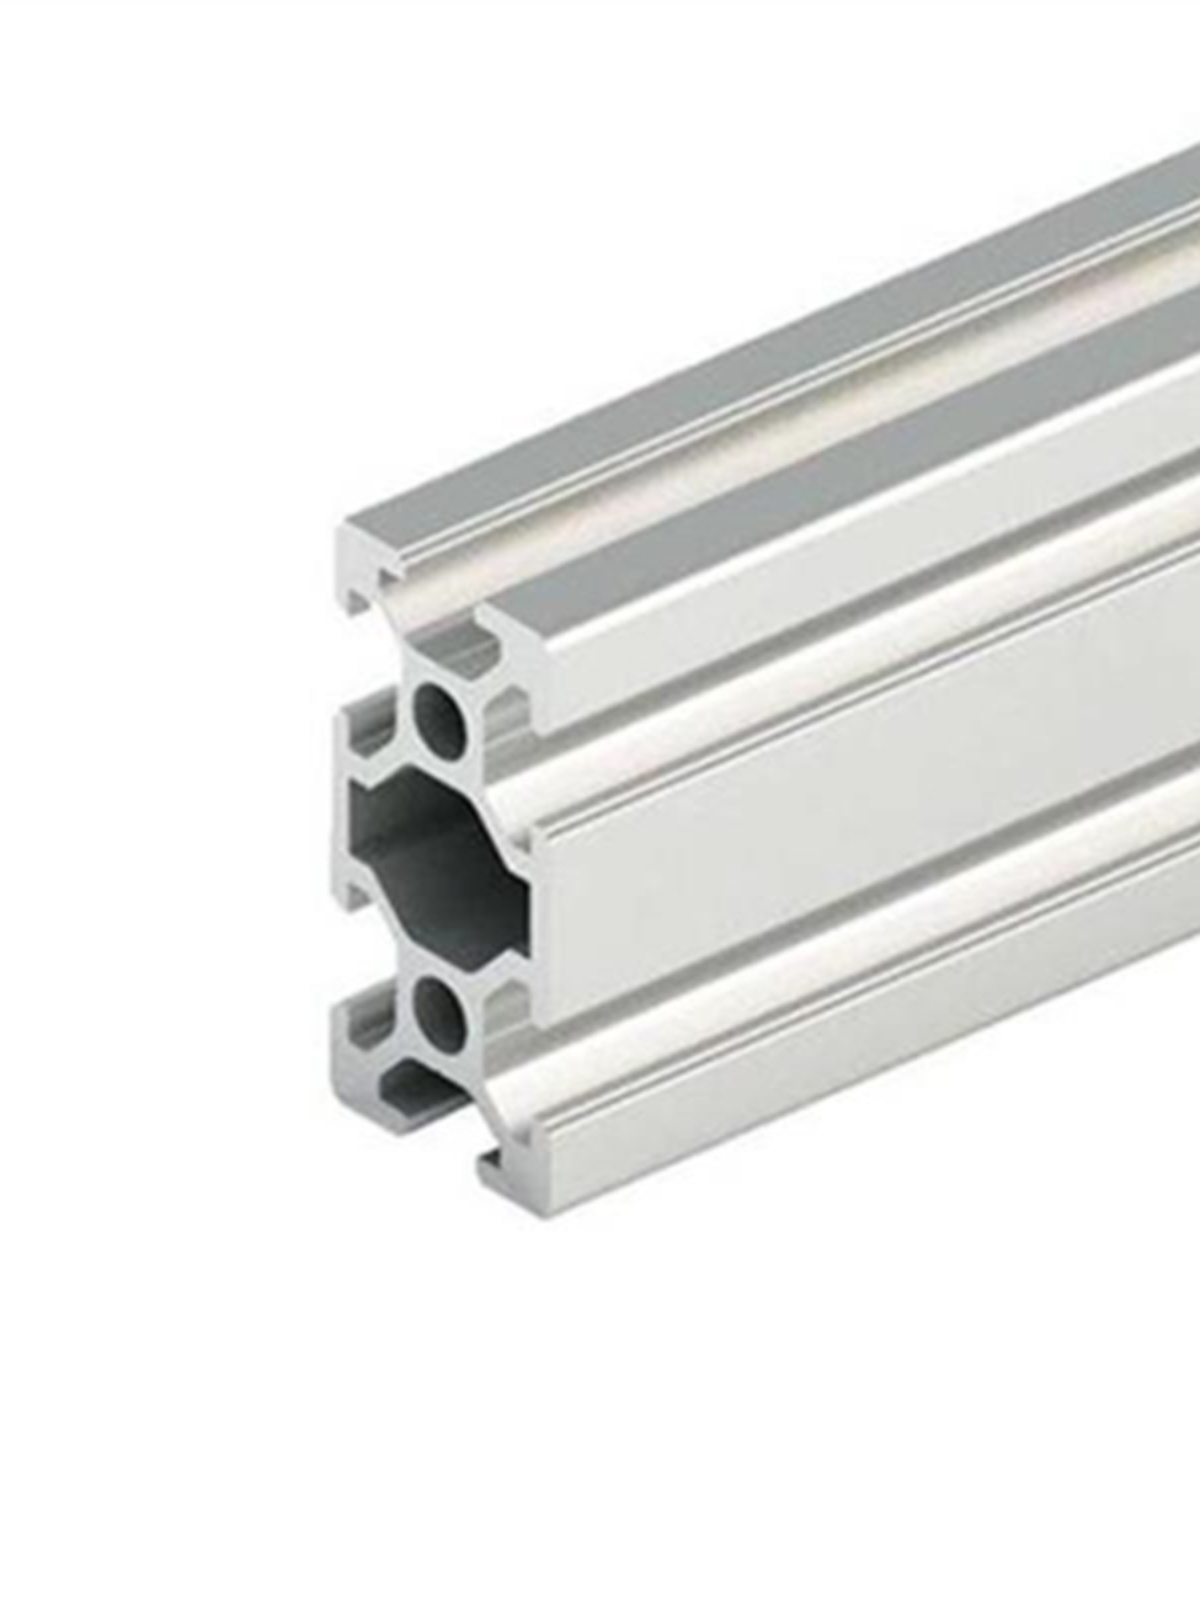 品新040a工业铝型材工业流水线铝型材输G送线加工材料hX型铝材新